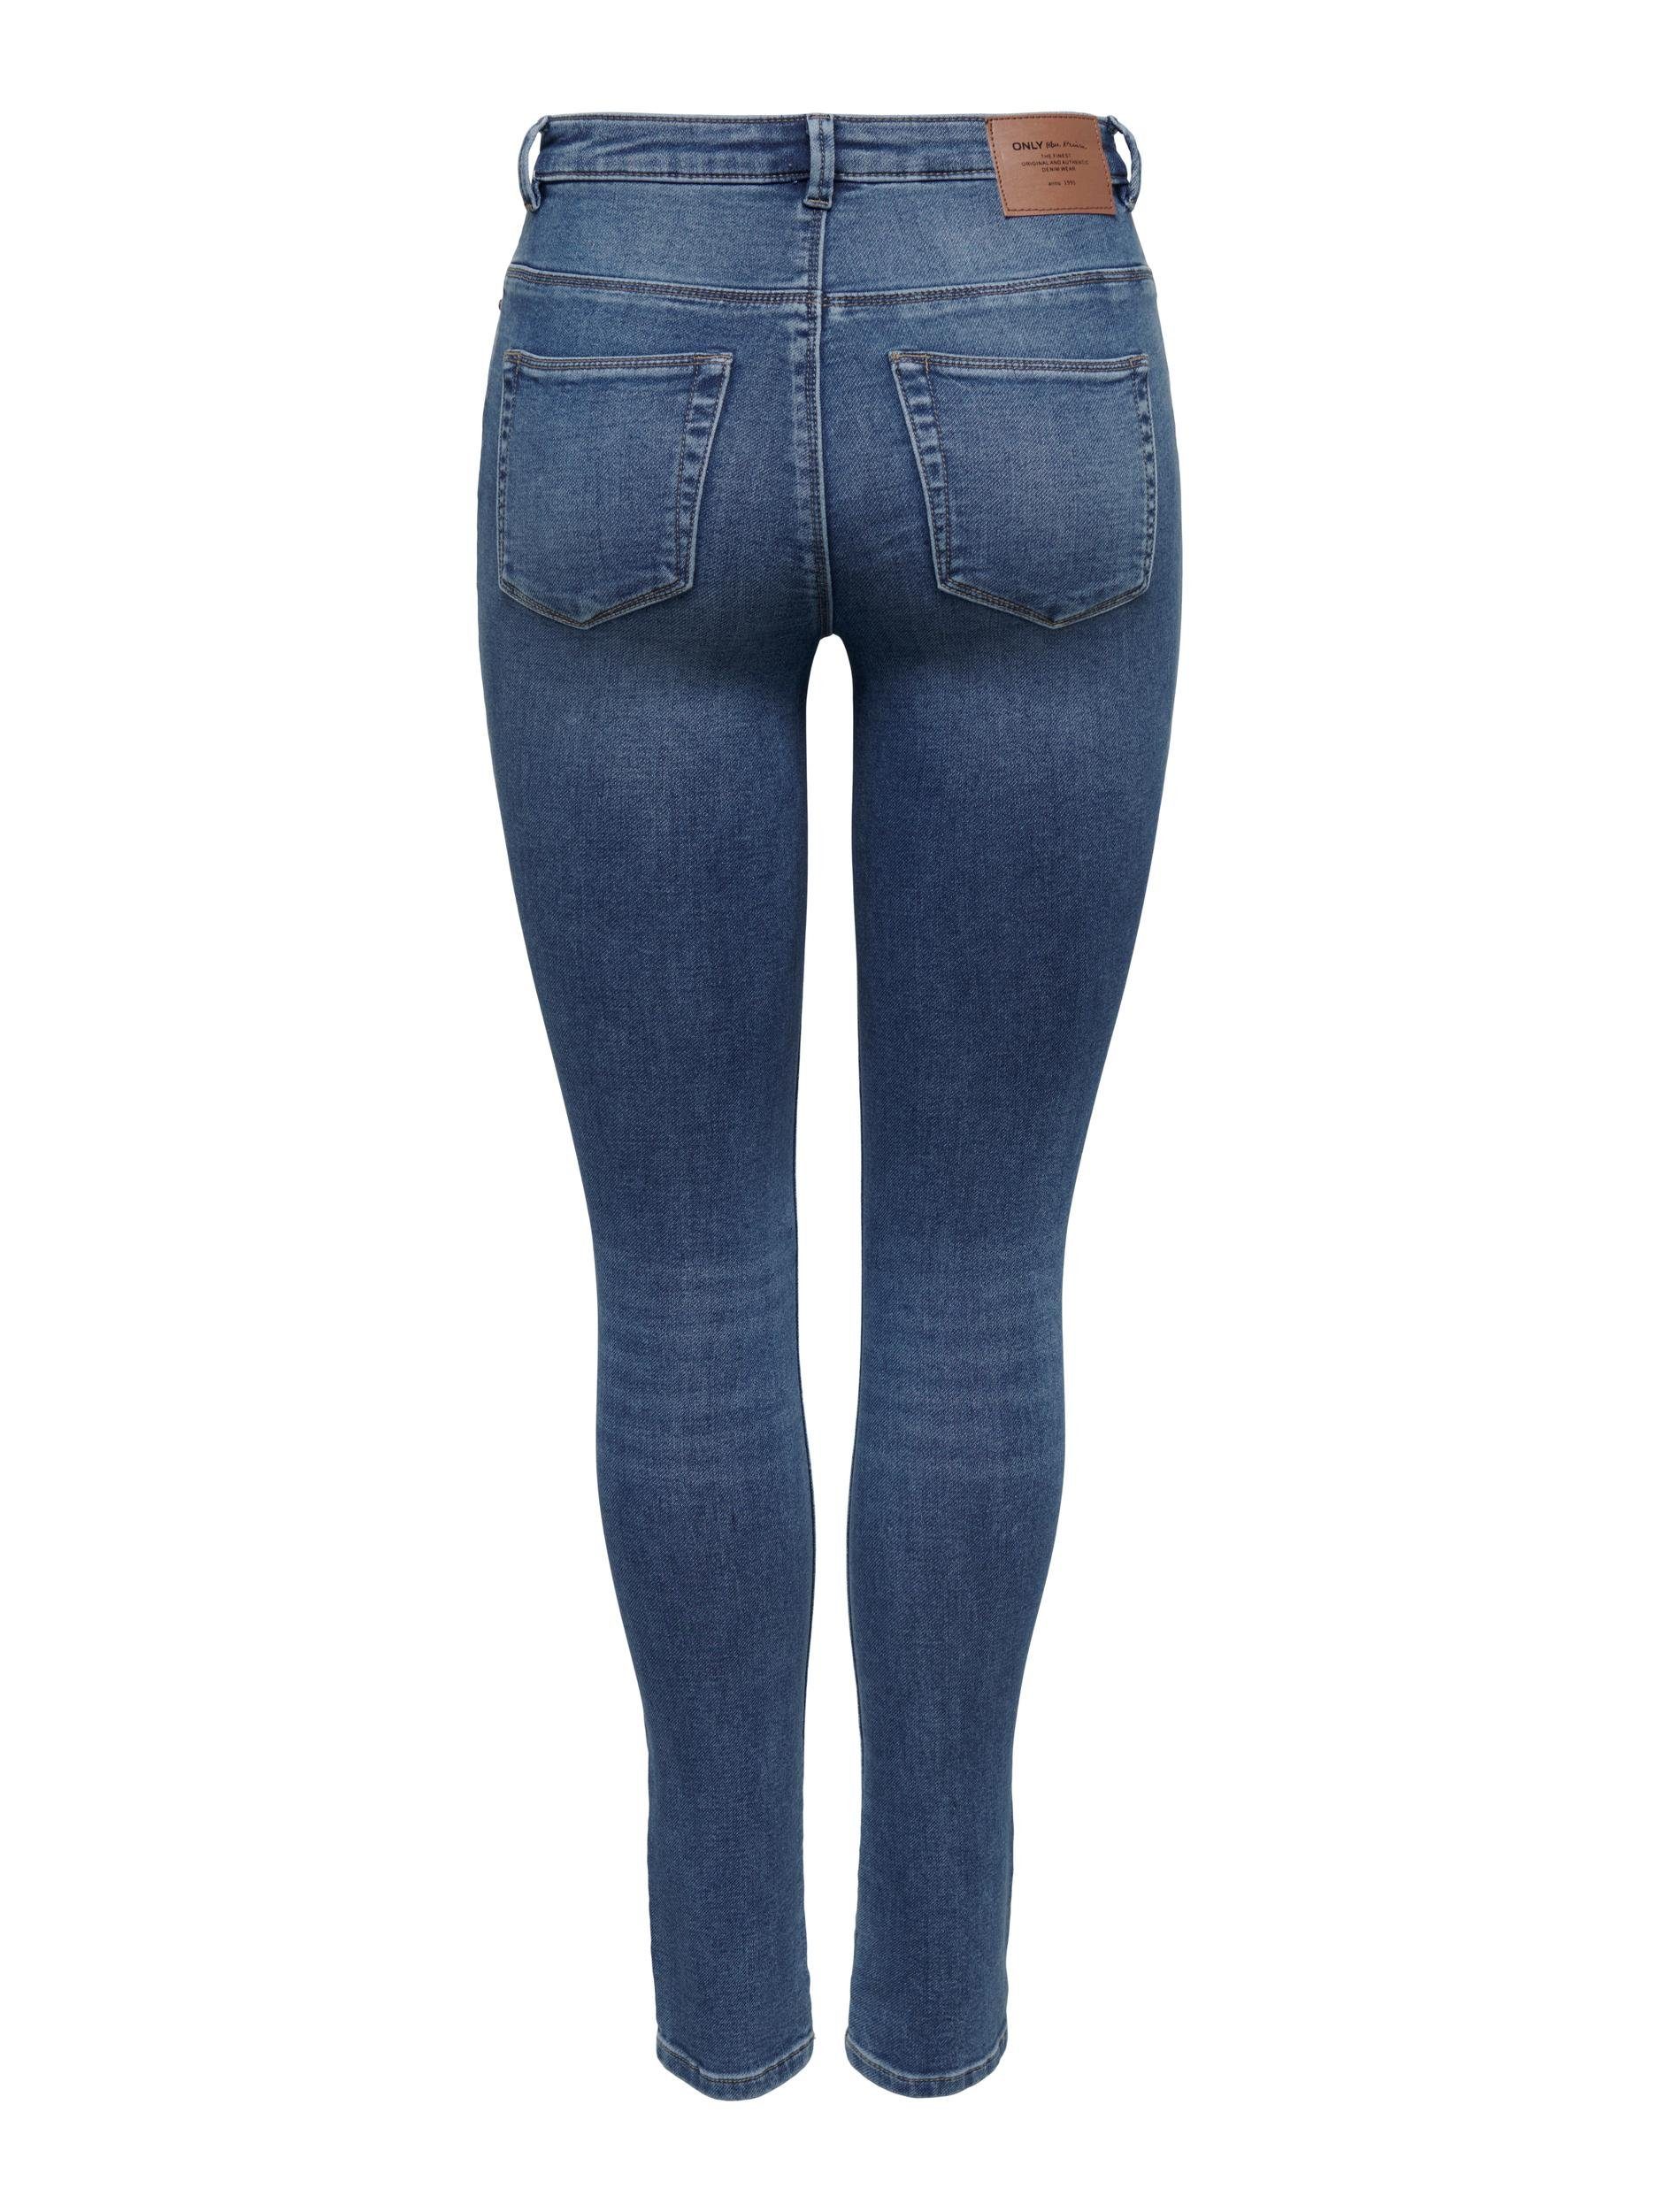 ONLY 5-Pocket-Jeans ONLFOREVER HIGH HW Denim JOGG Blue Medium DNM SKINNY